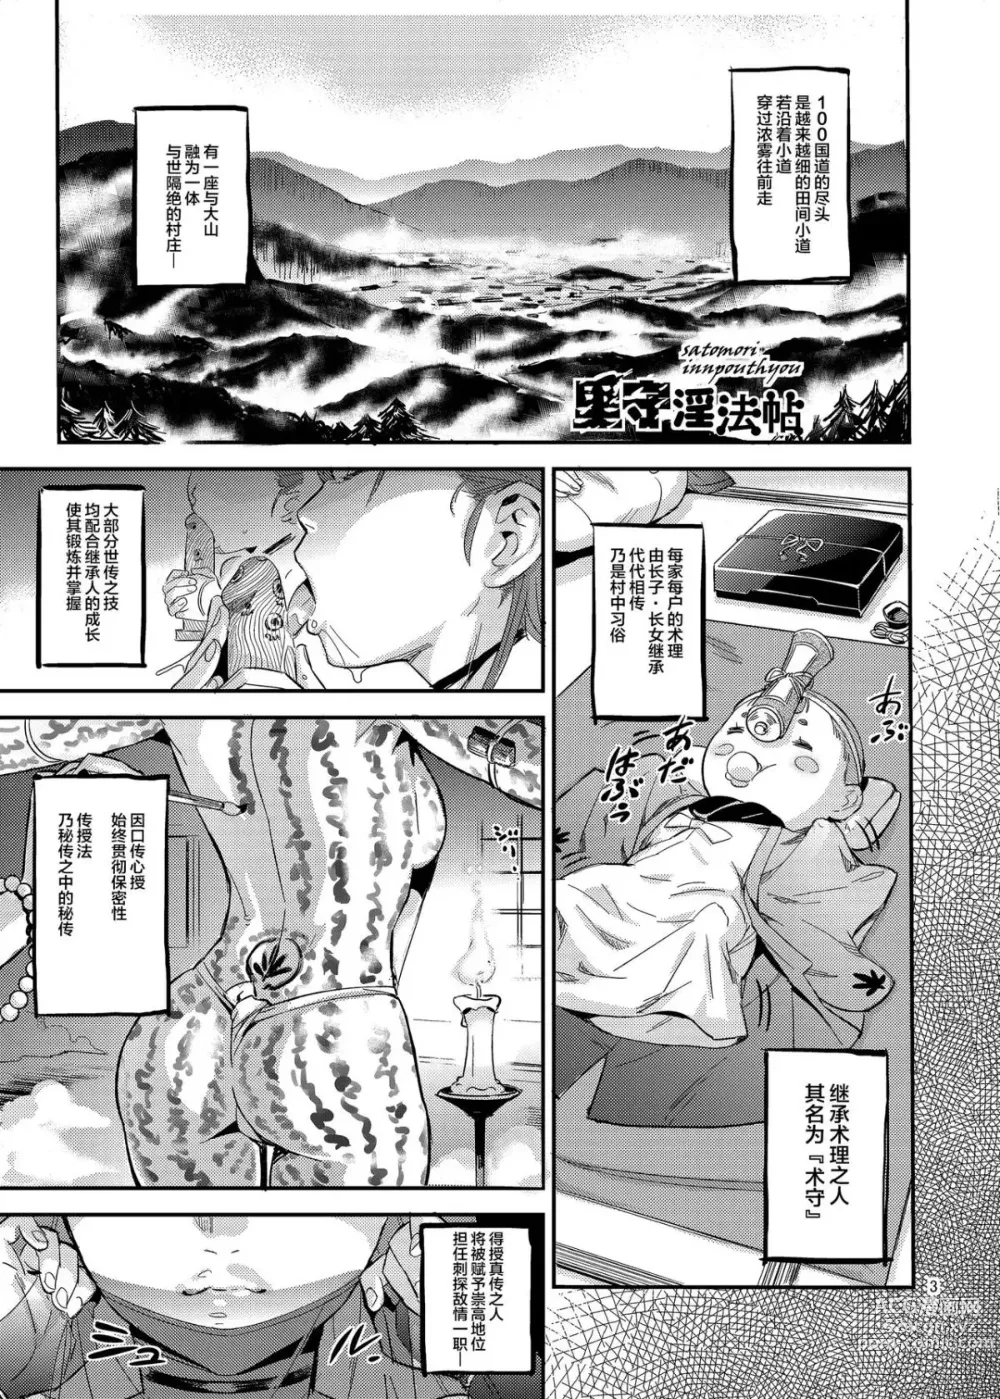 Page 4 of doujinshi Satomori Haira Inpouchou